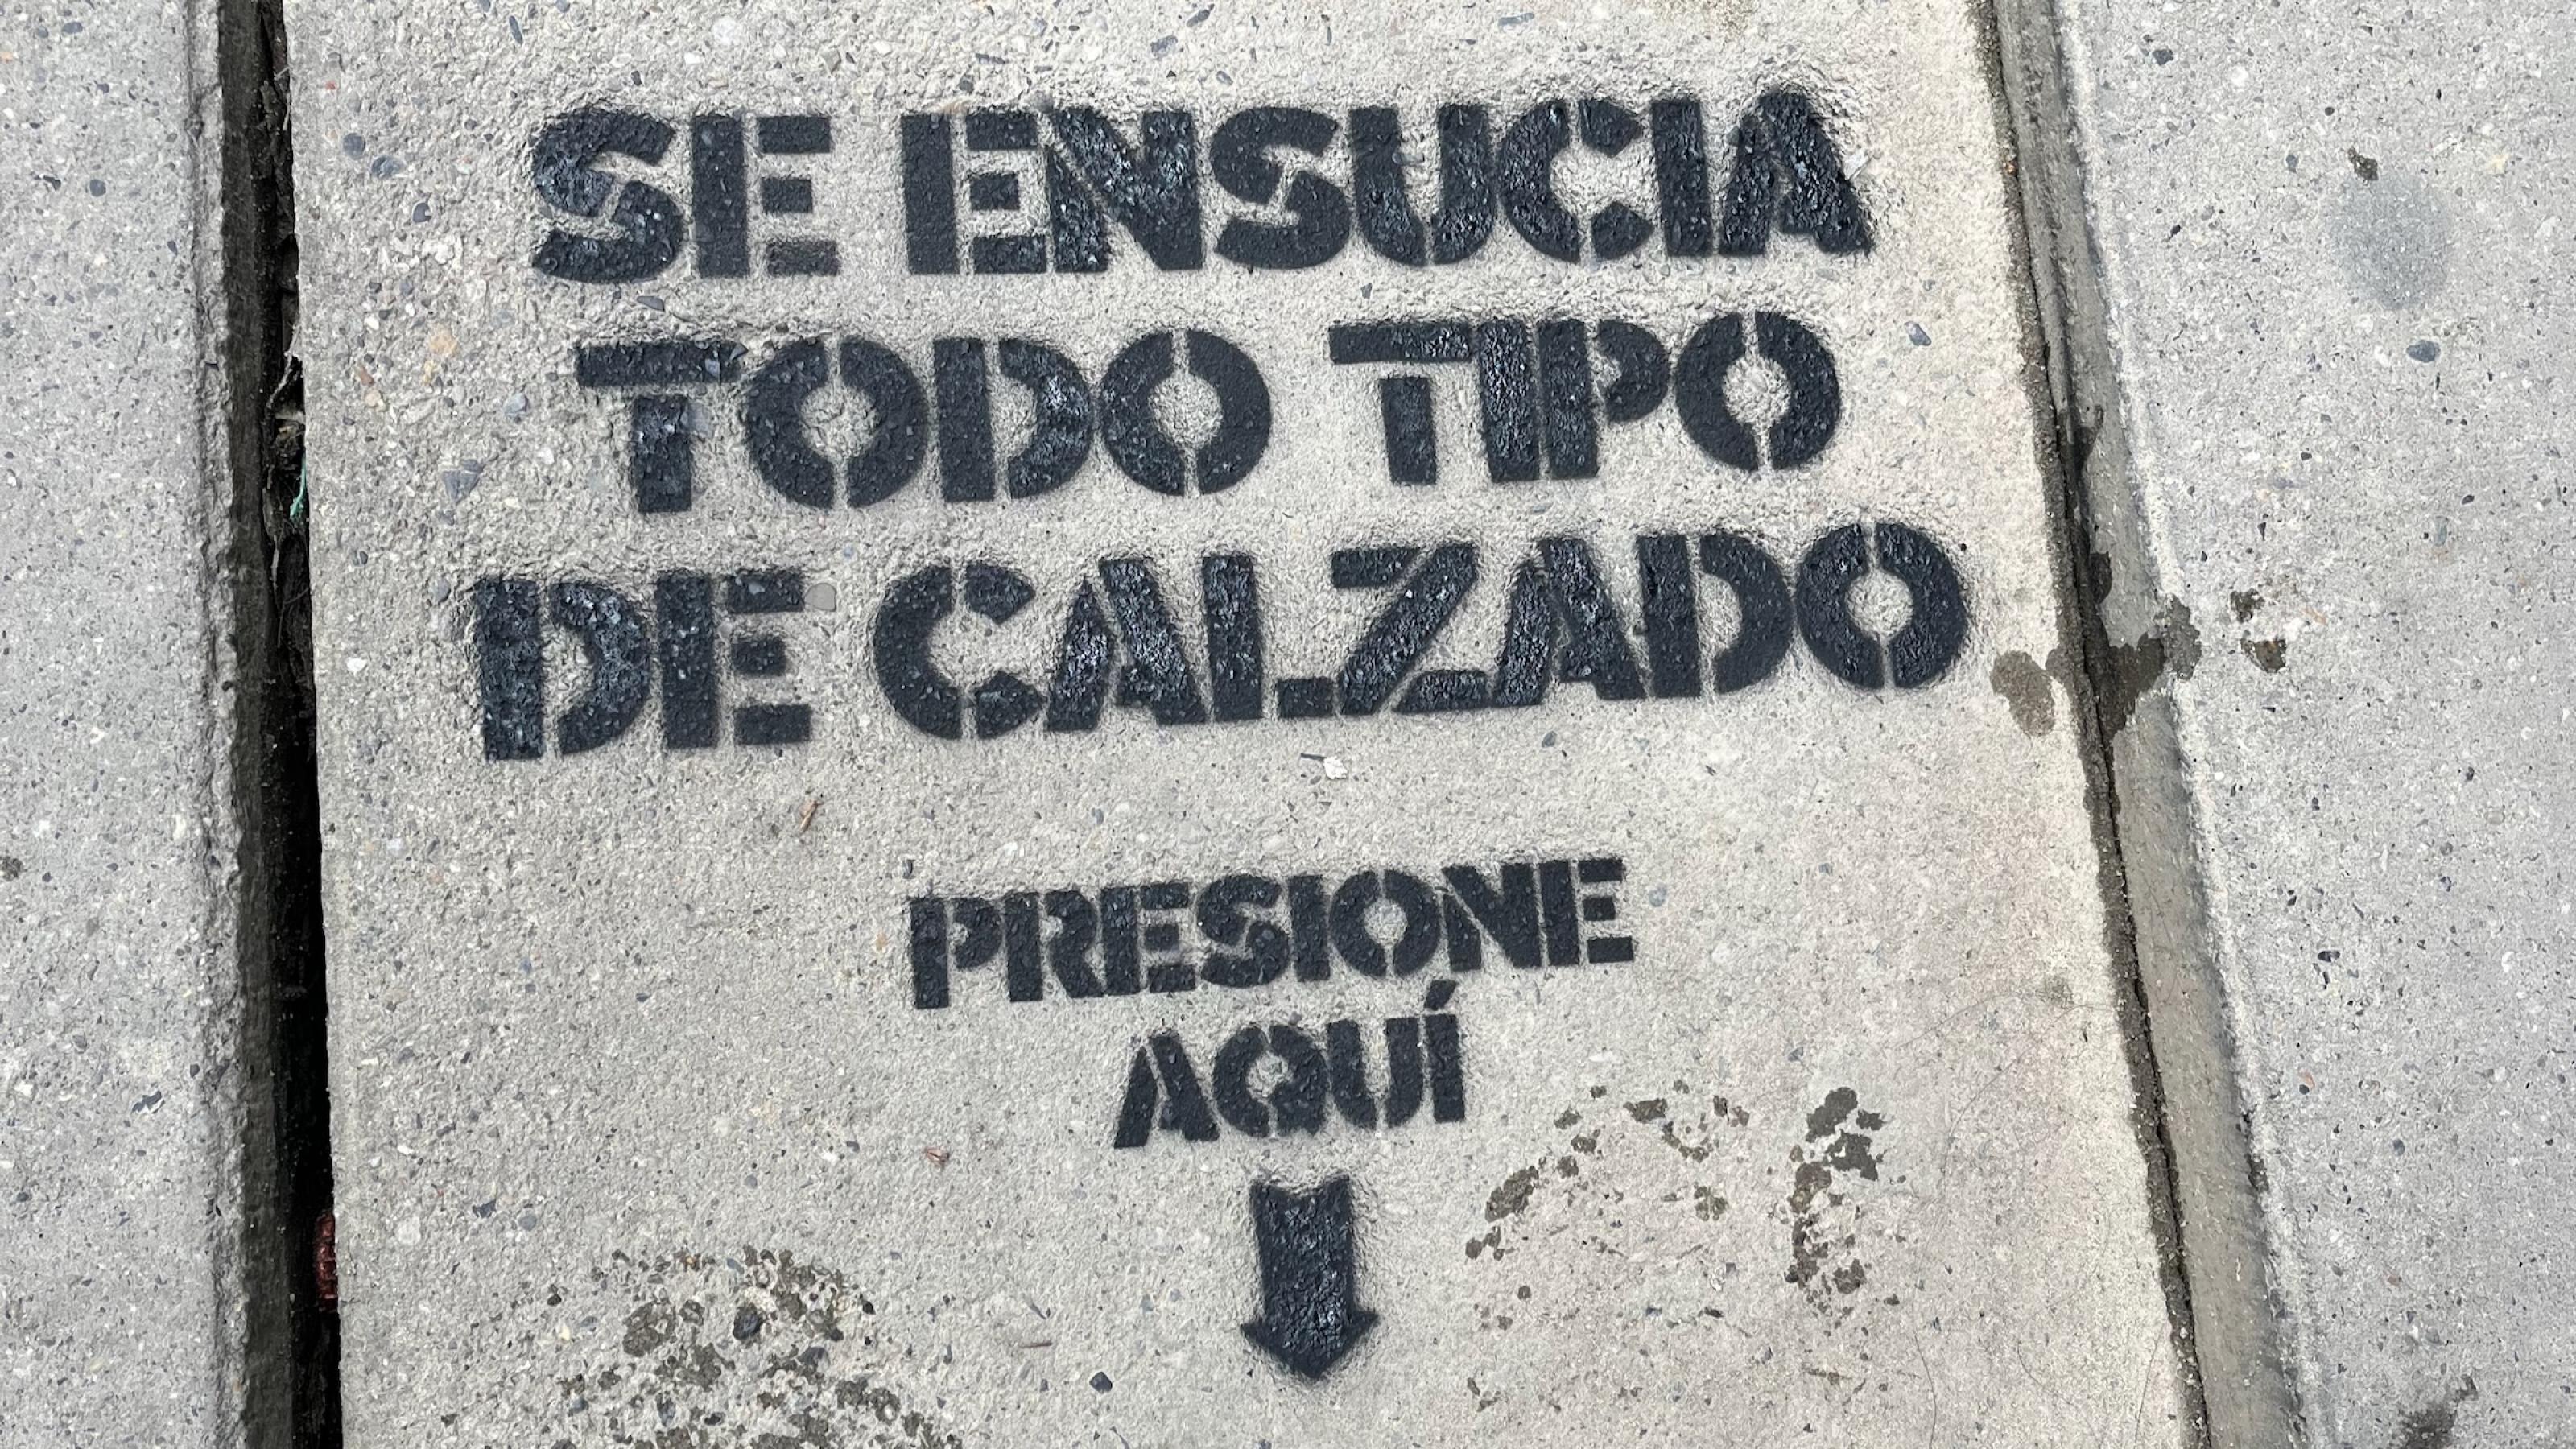 Auf die graue schlichte Bodenplatte eines Gehwegs ist auf Spanisch dieser Text mit einer Schablone gesprüht. Am Ende zeigt ein Pfeil auf die Stelle, auf die man treten soll (was auch an zwei feuchten echten Schuhabdrücken zu erkennen ist).